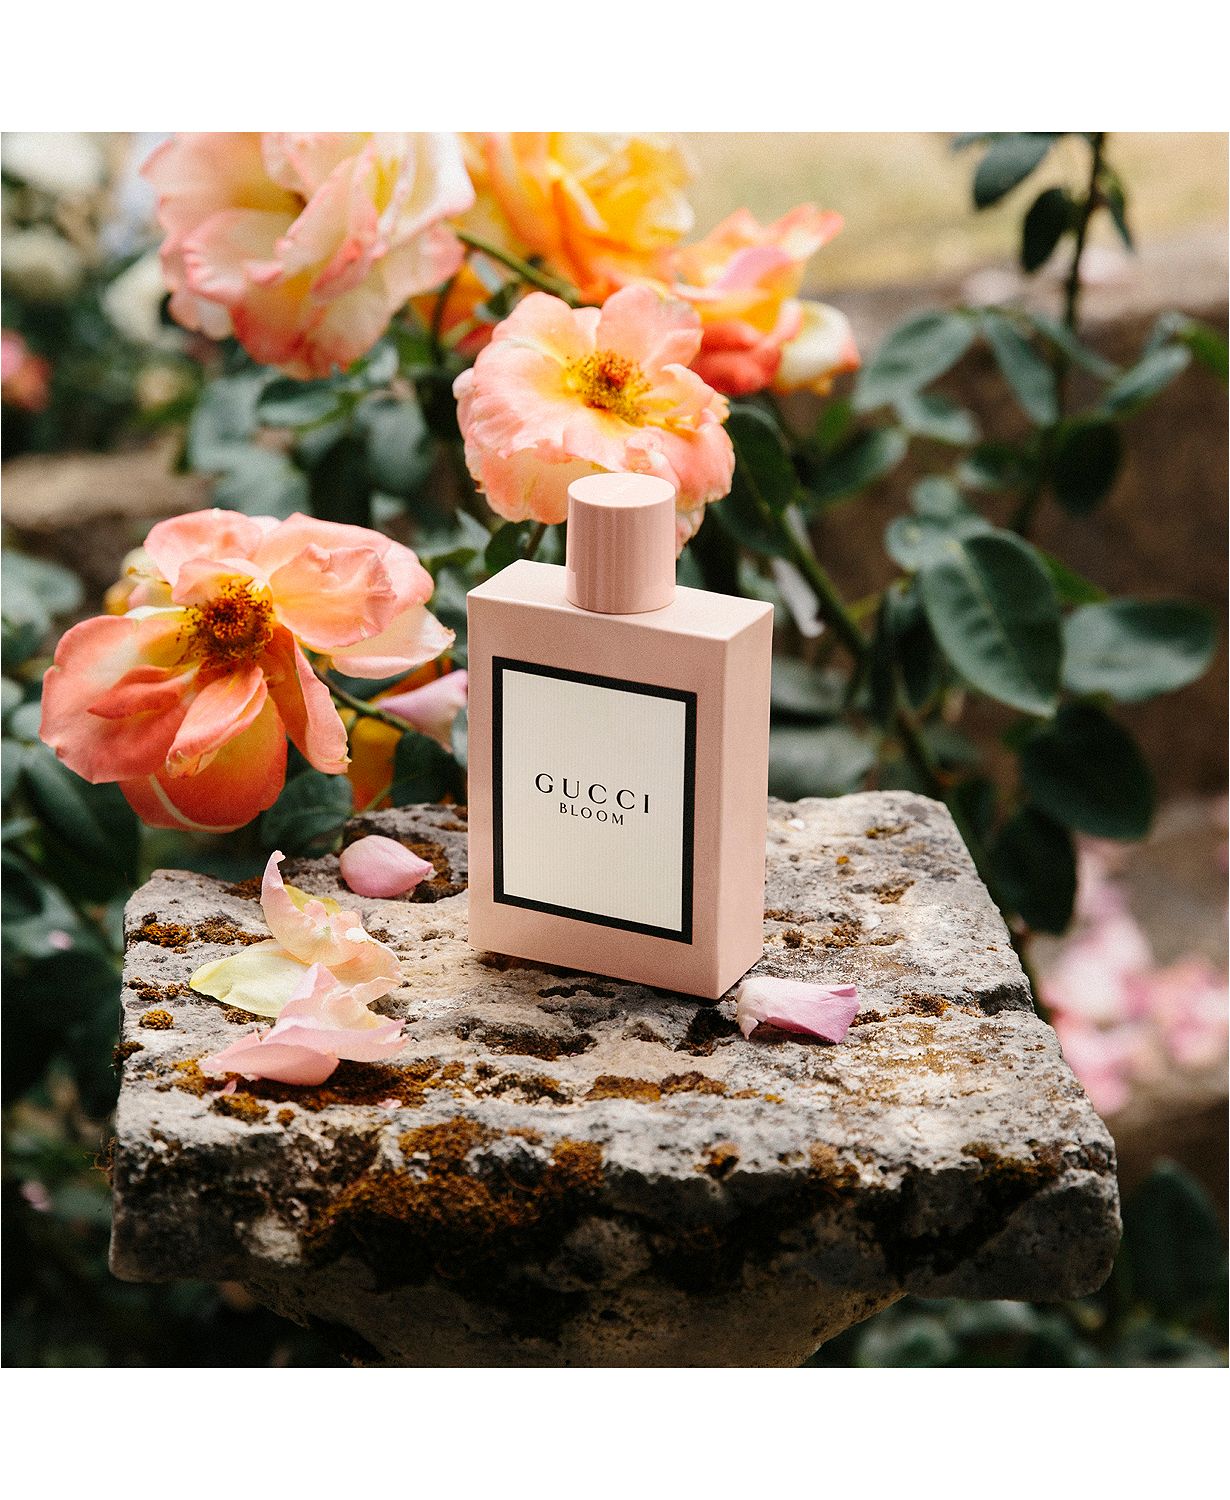 3-Pc. Bloom Eau de Parfum Gift Set